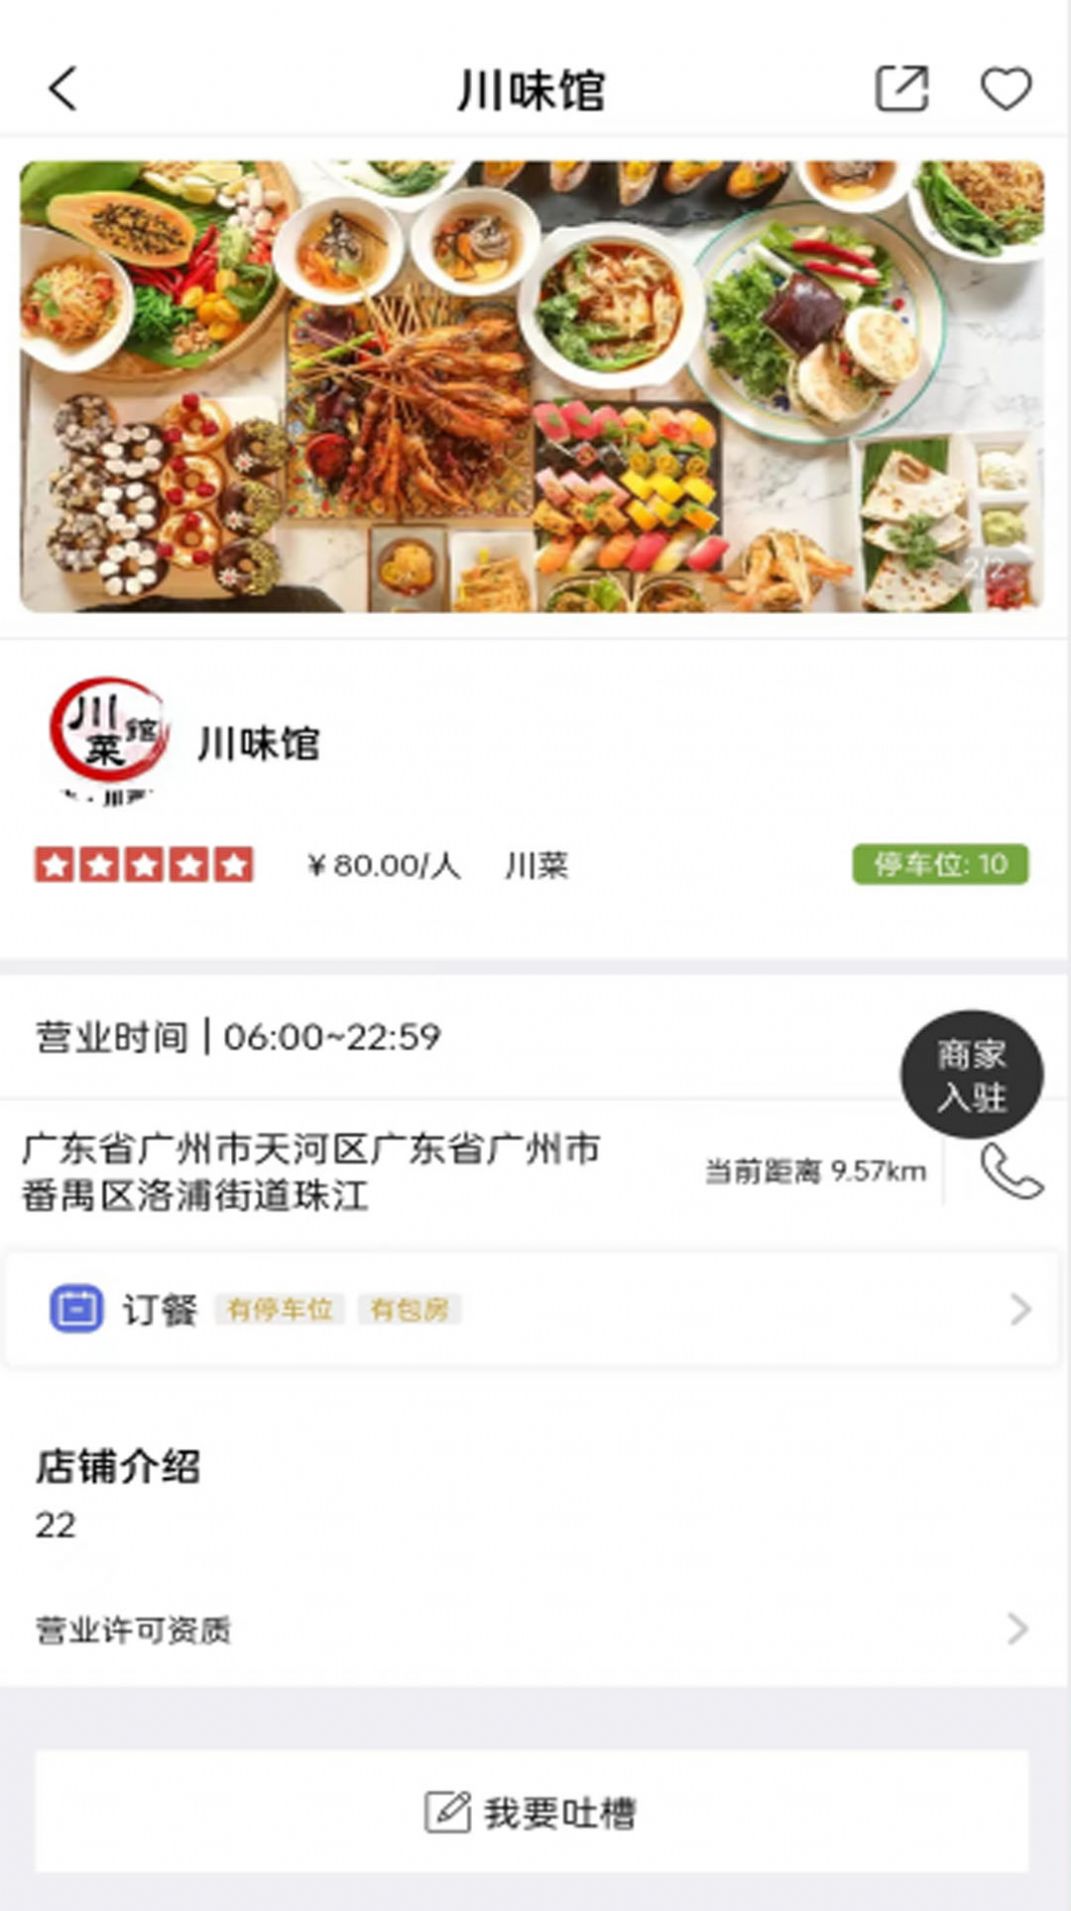 云尚餐饮app图3